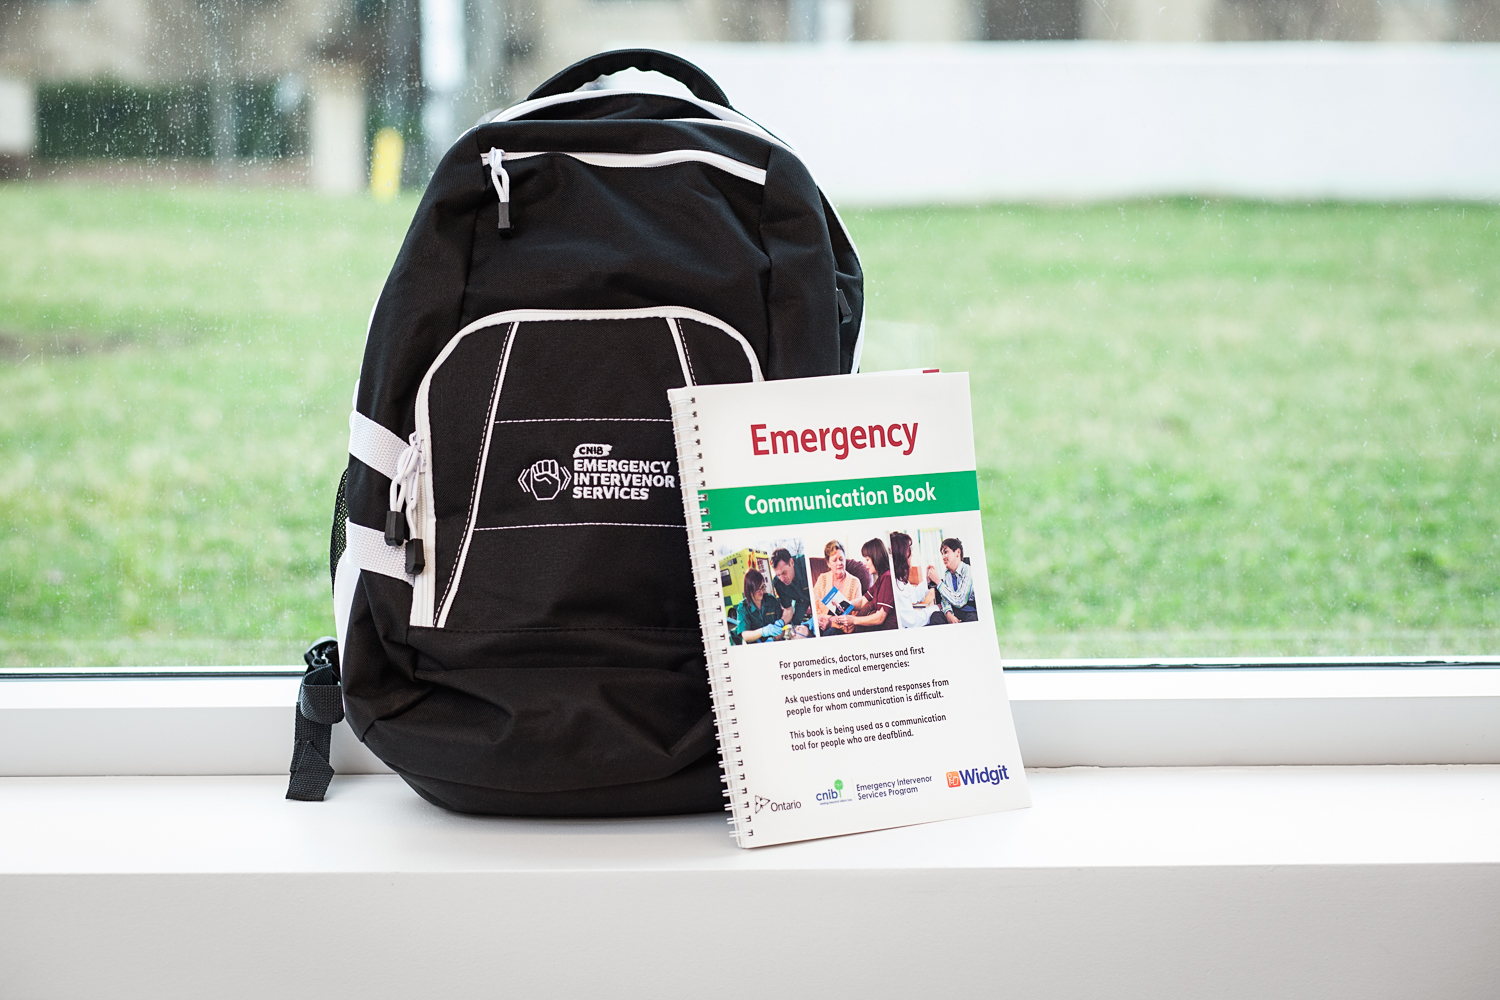 Le kit de communication d'urgence du SCS. Un sac à dos noir et un livre intitulé "Emergency Communication Book".